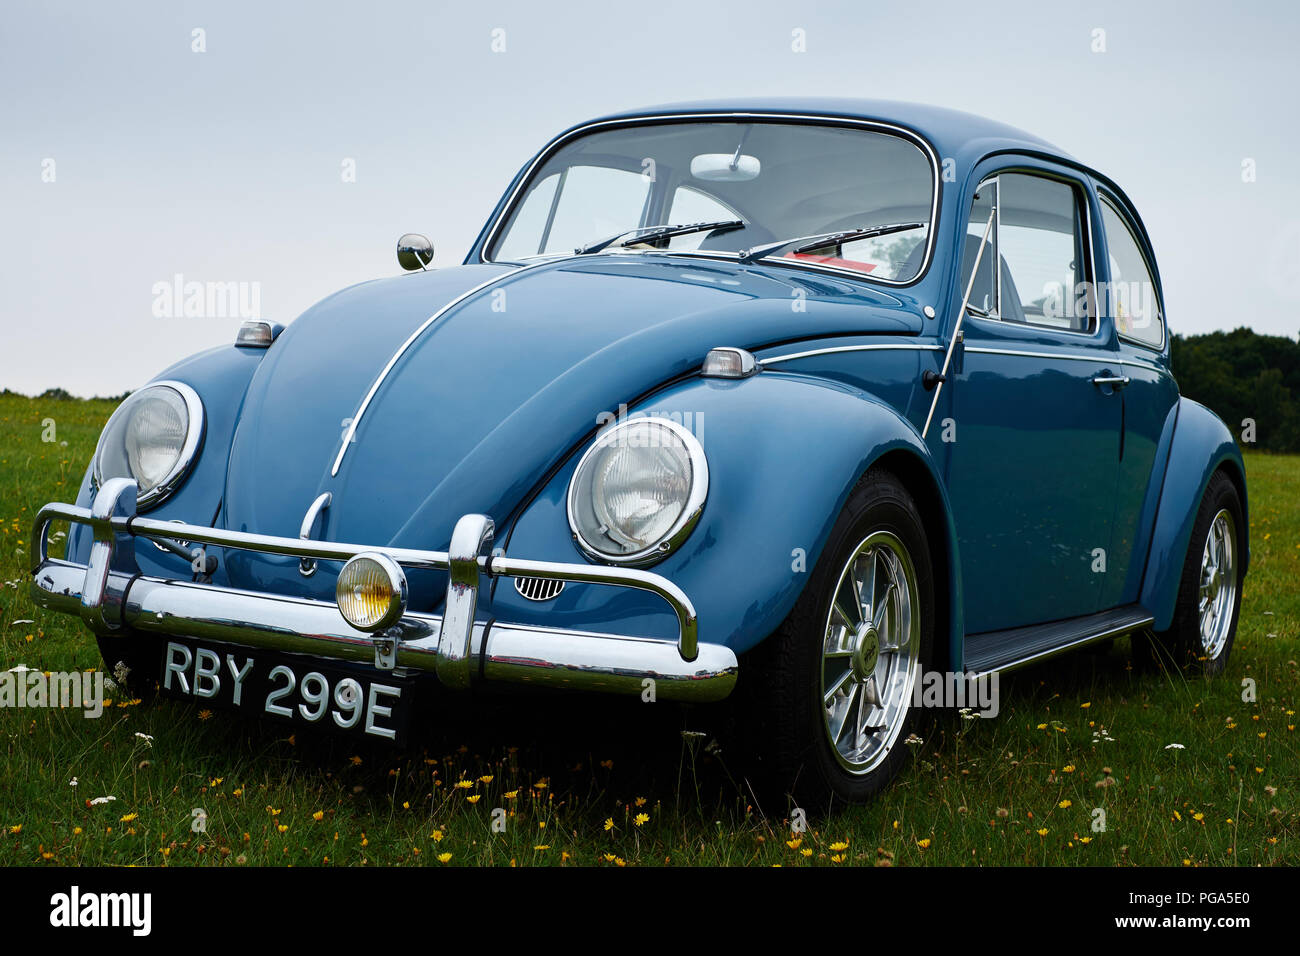 Knebworth, Hertfordshire/UK - 30. August 2015: ein Klassiker, Blau Volkswagen Beetle Auto auf einer mit Blumen bedeckten Wiese Stockfoto